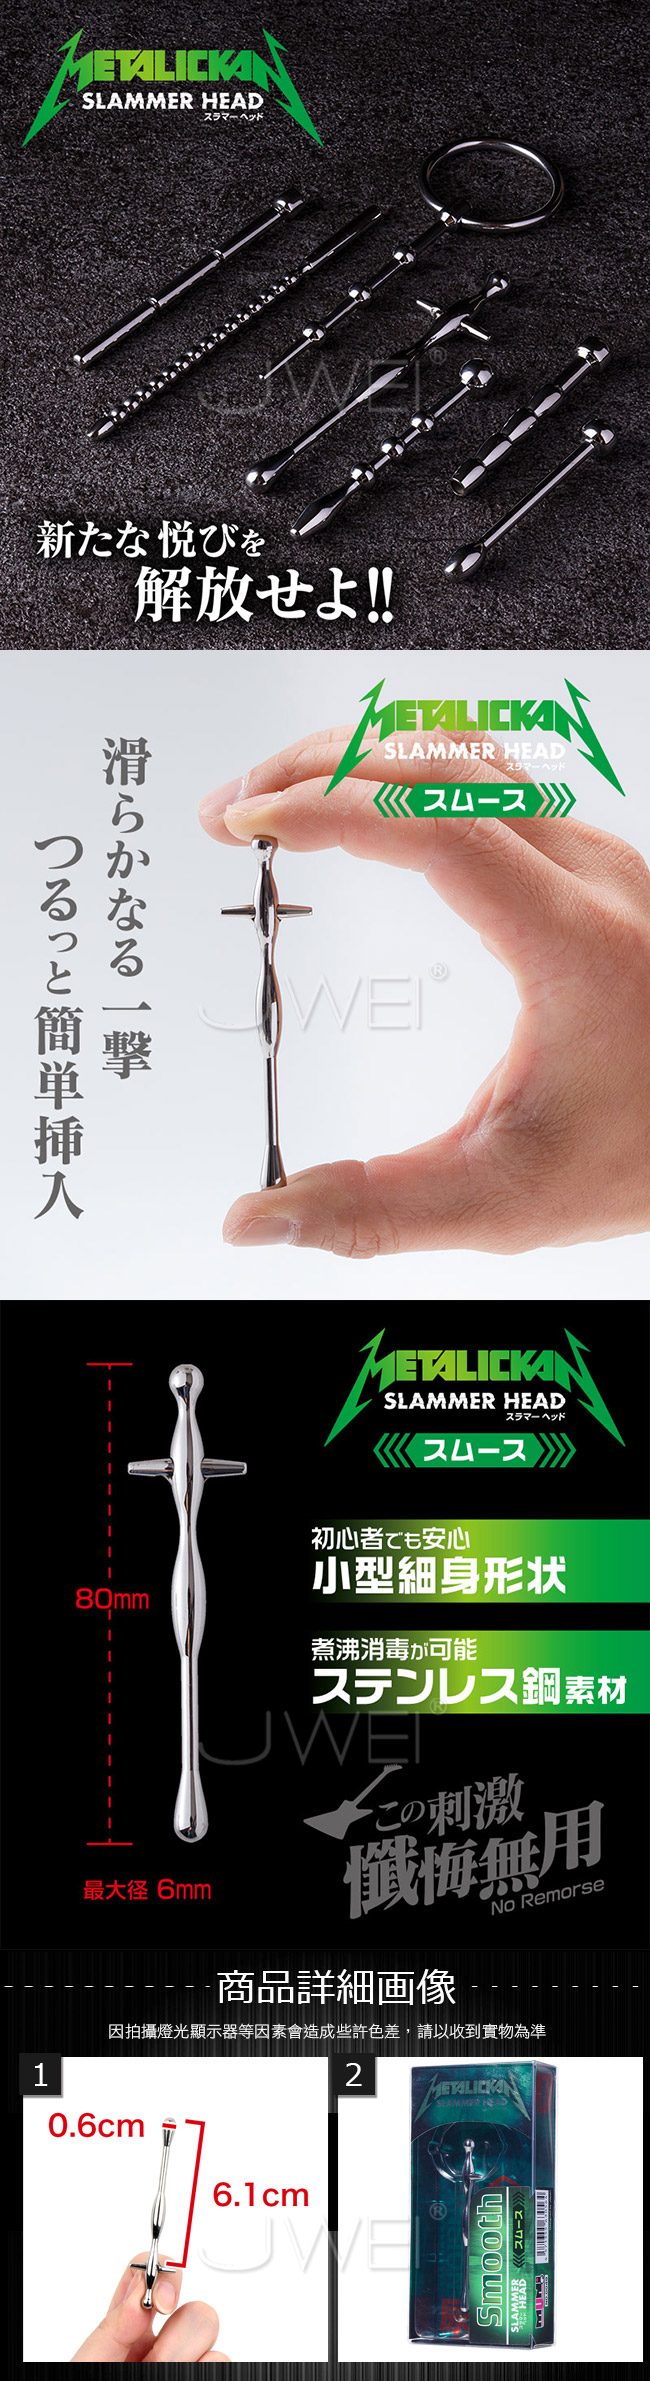 日本原裝進口NPG．METALICKAN Slammer Head 初心者專用不銹鋼馬眼尿道刺激器-Smooth